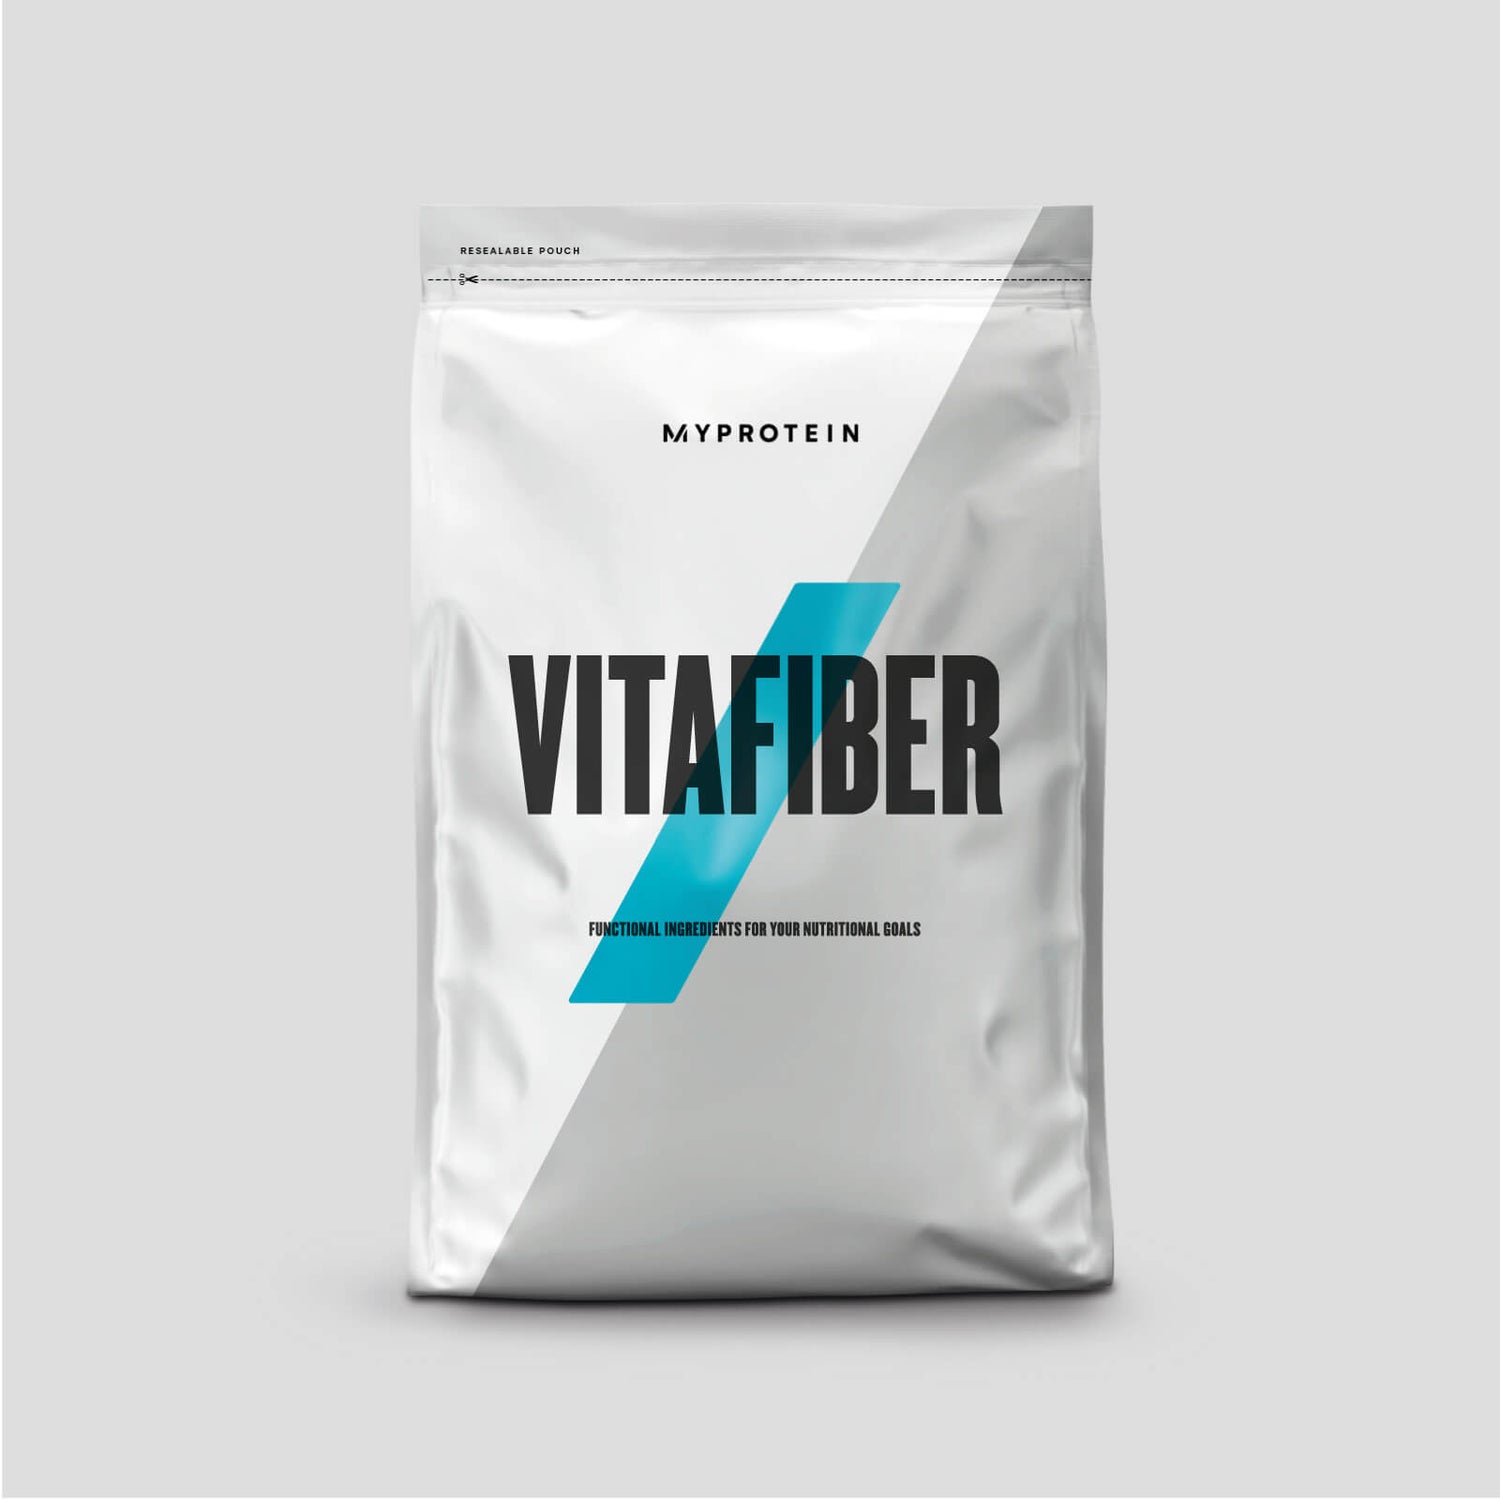 Vitafiber ™